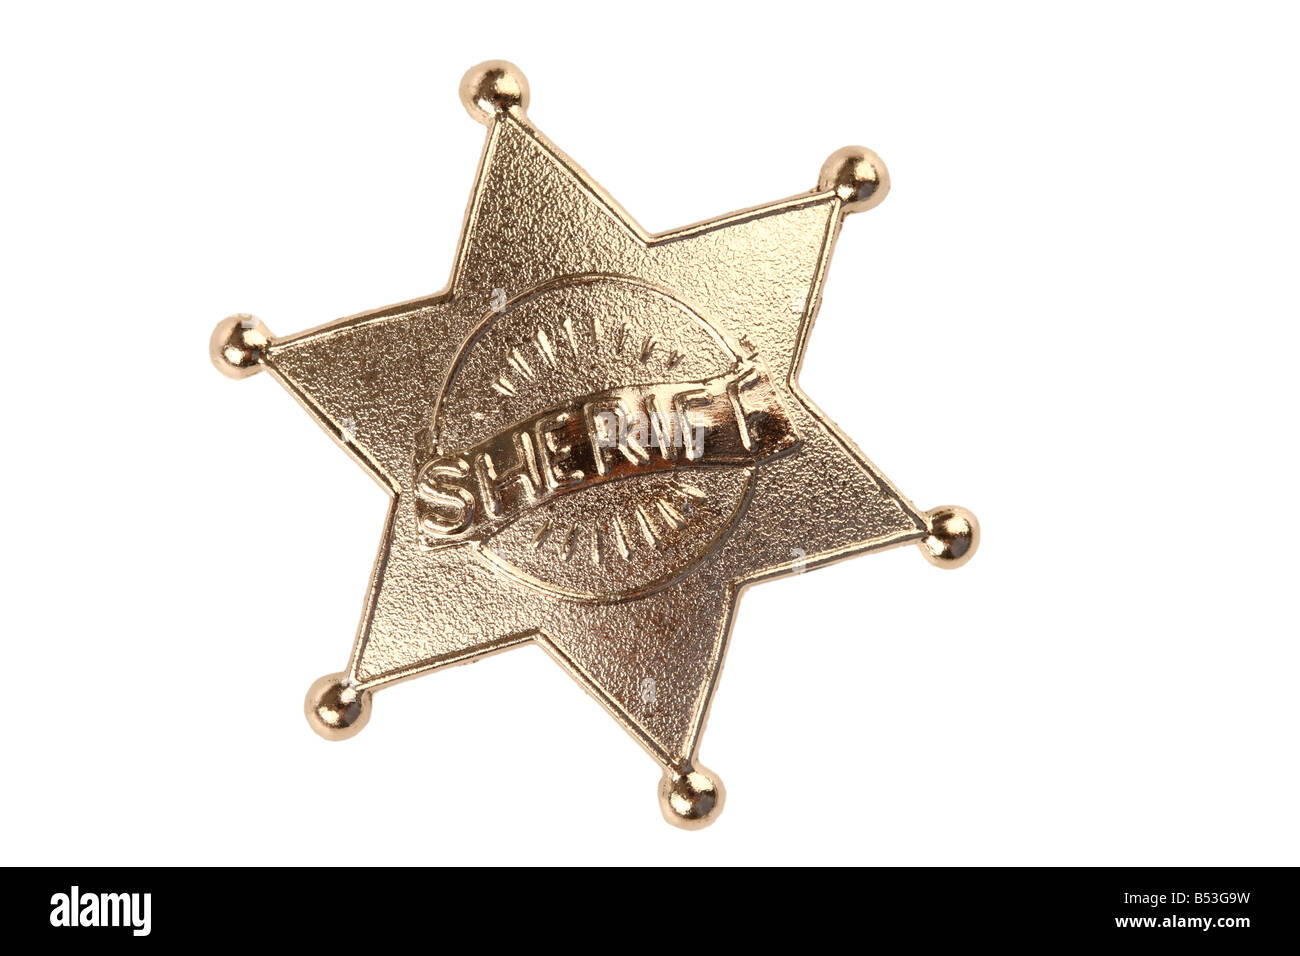 Sheriff badge cutout isolated on white background Stock Photo